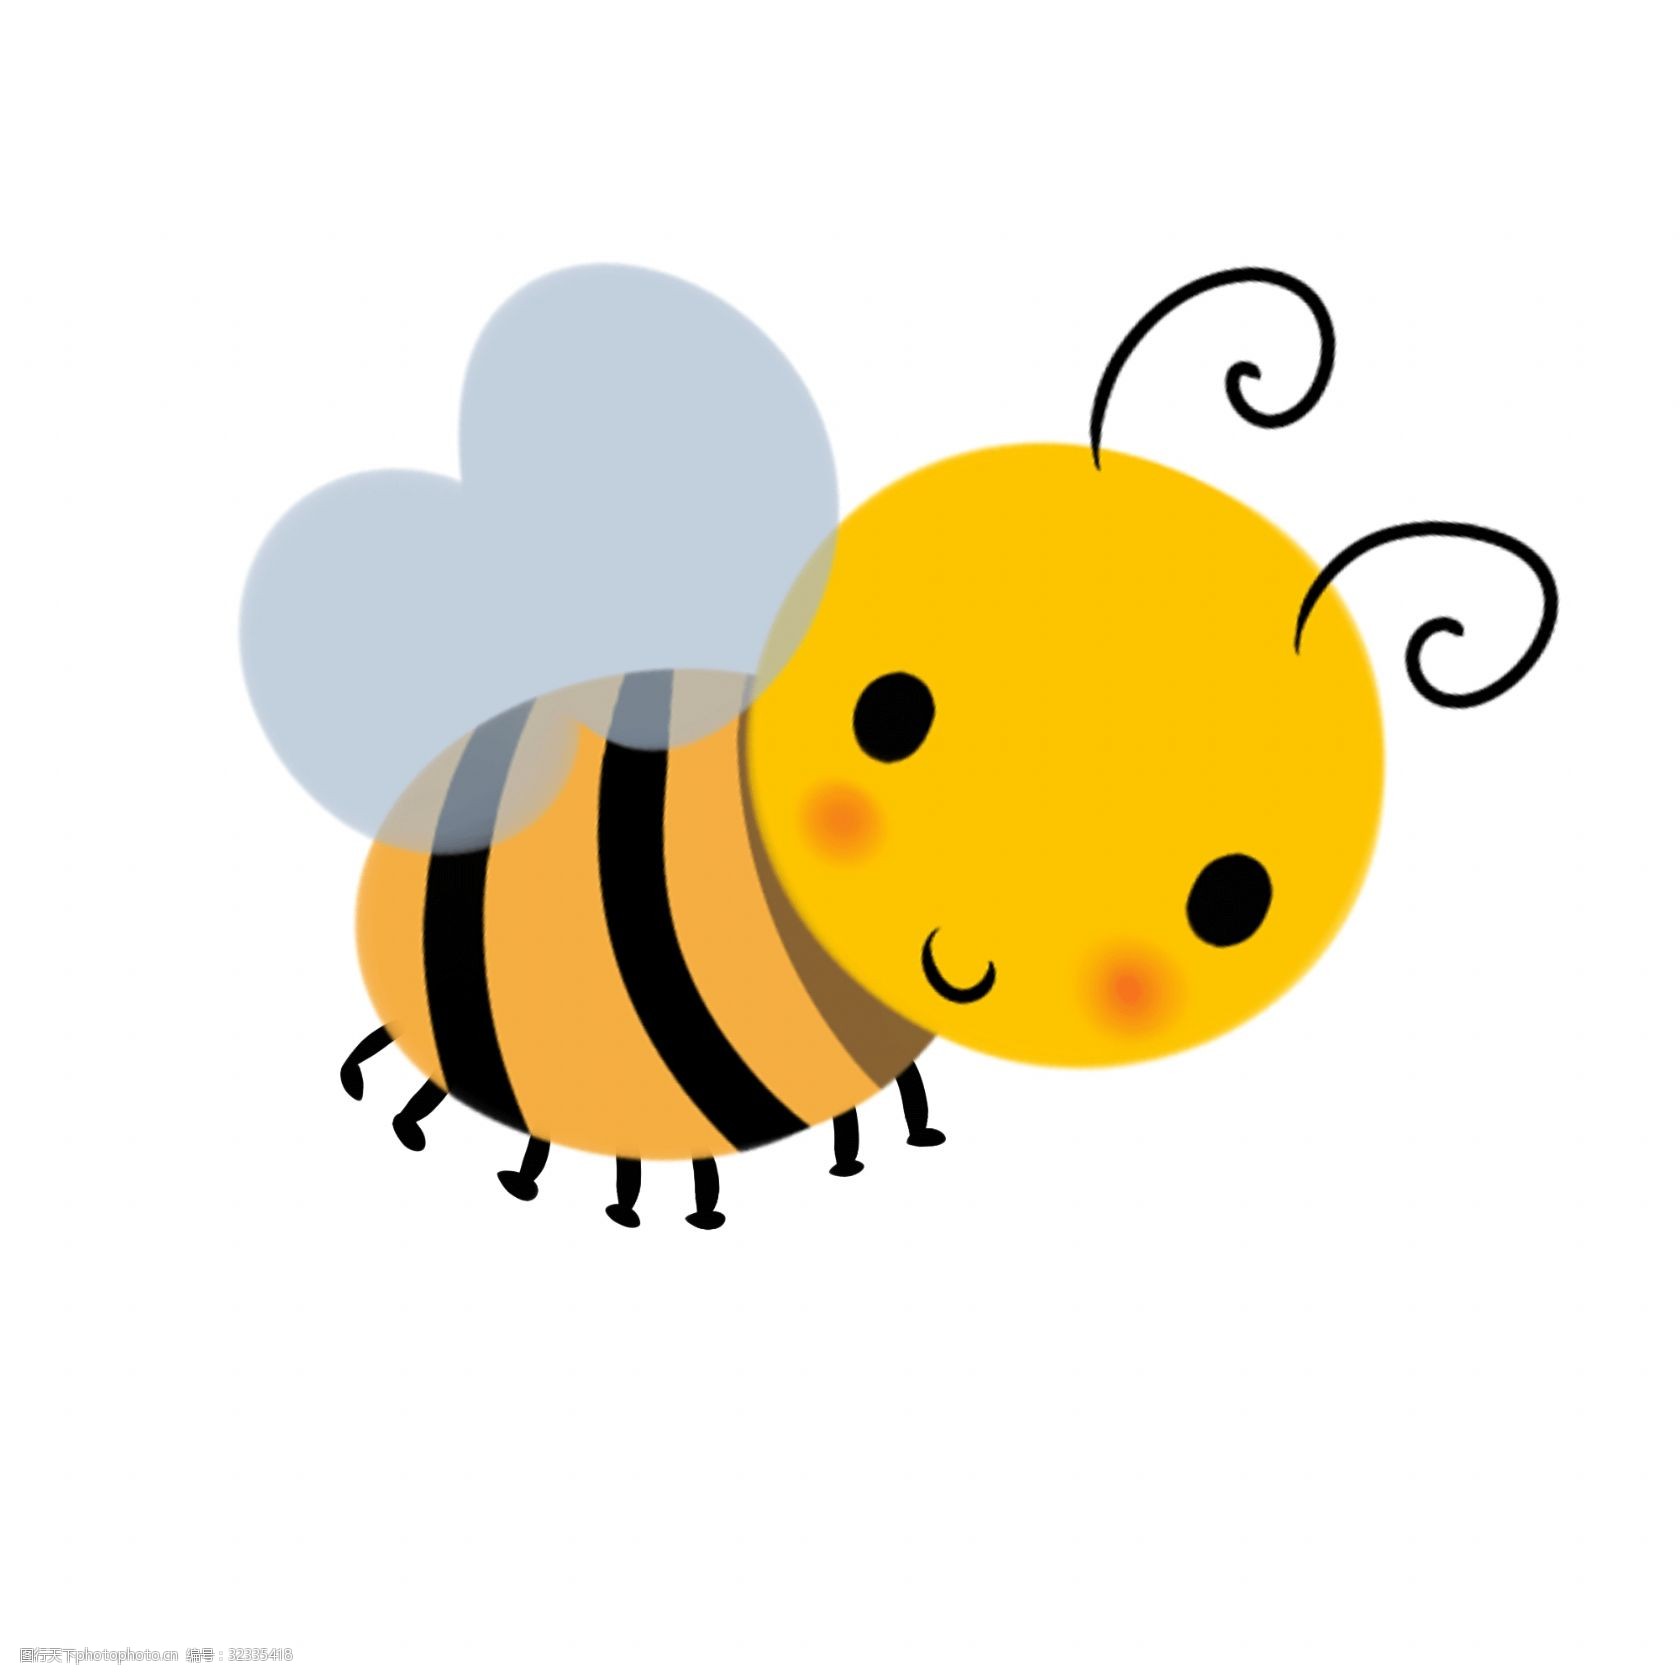 关键词:可爱小蜜蜂 卡通 可爱 动物 昆虫 春天 报纸排版